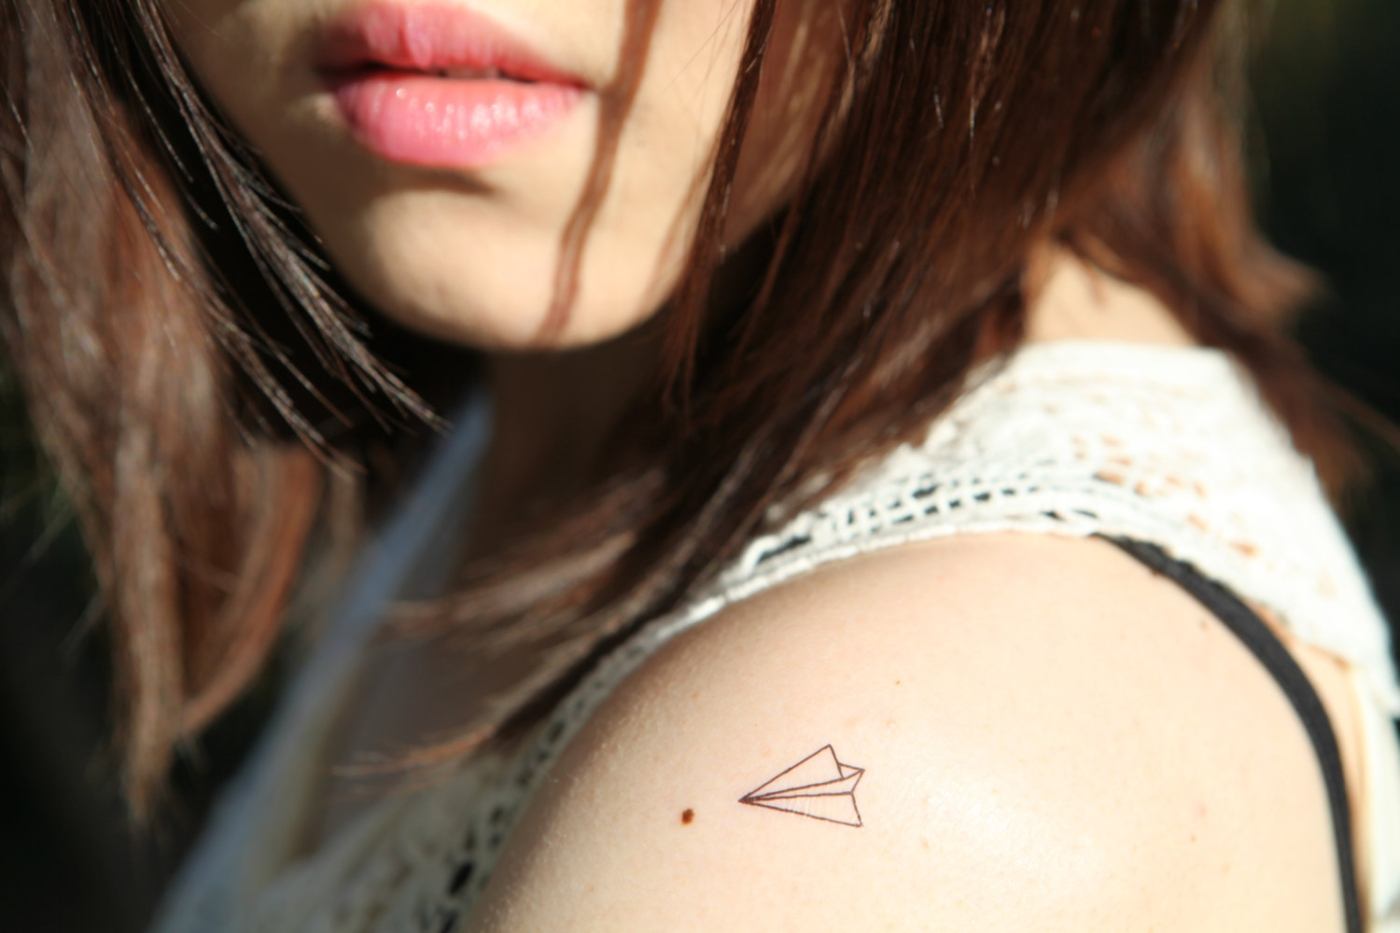 Schulter small tattoos Papierflieger Meaning women